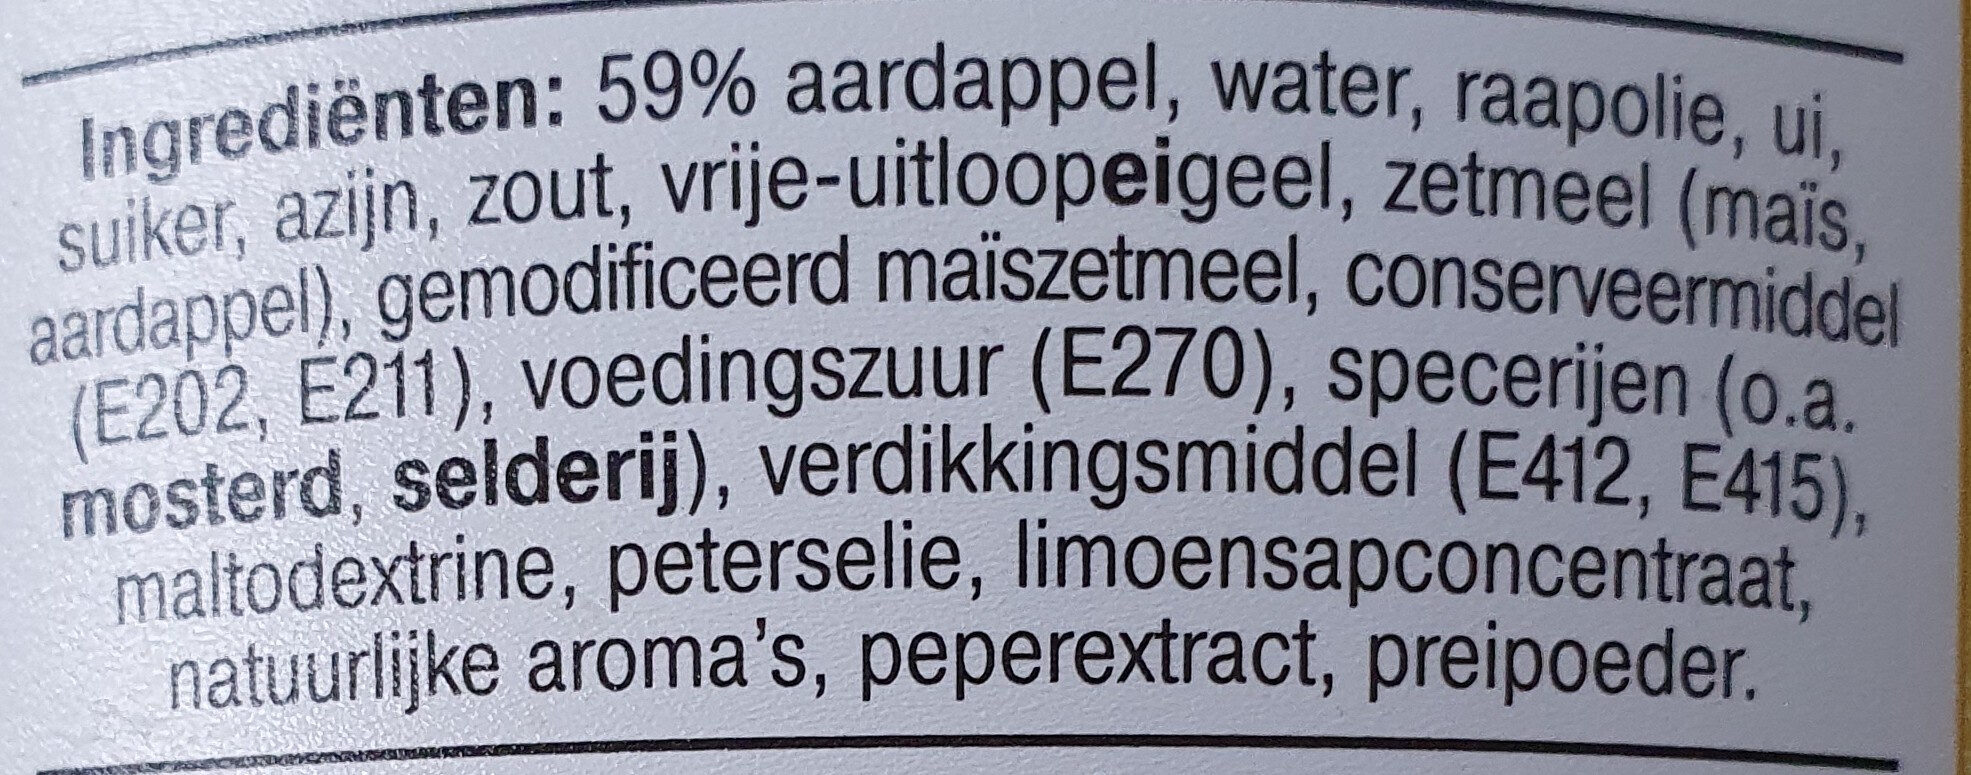 Aardappelsalade - Ingredients - nl